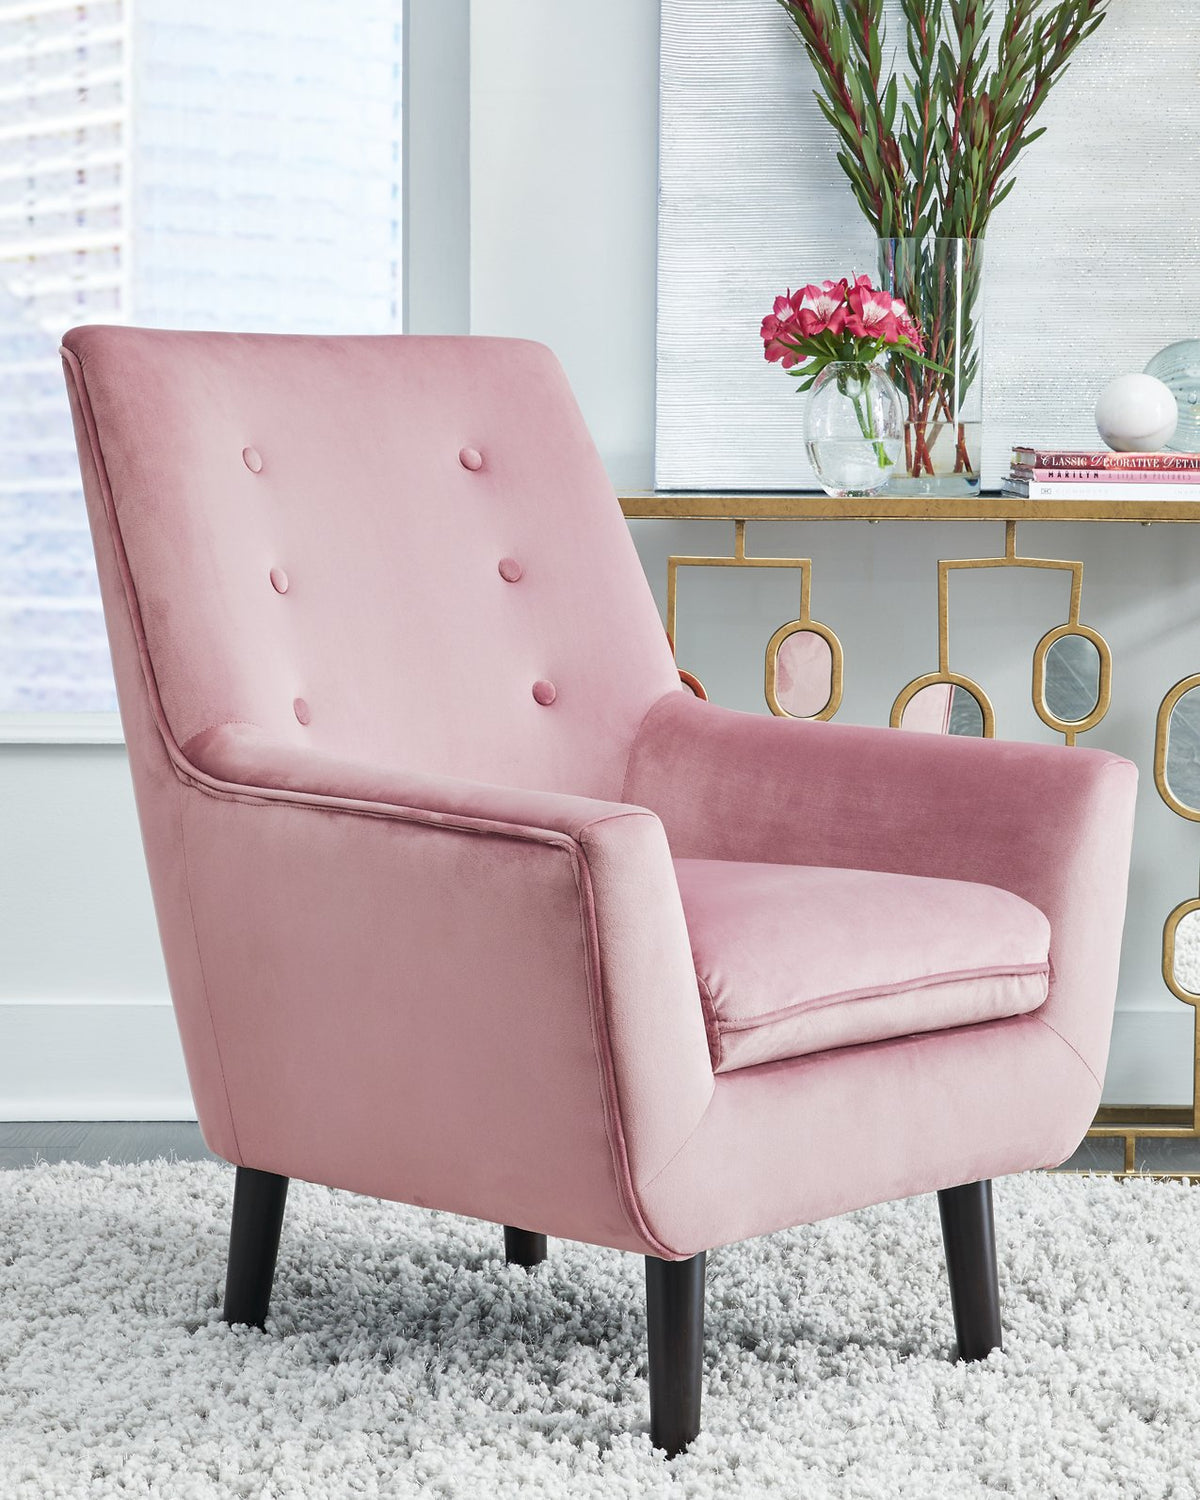 Zossen Accent Chair - Half Price Furniture